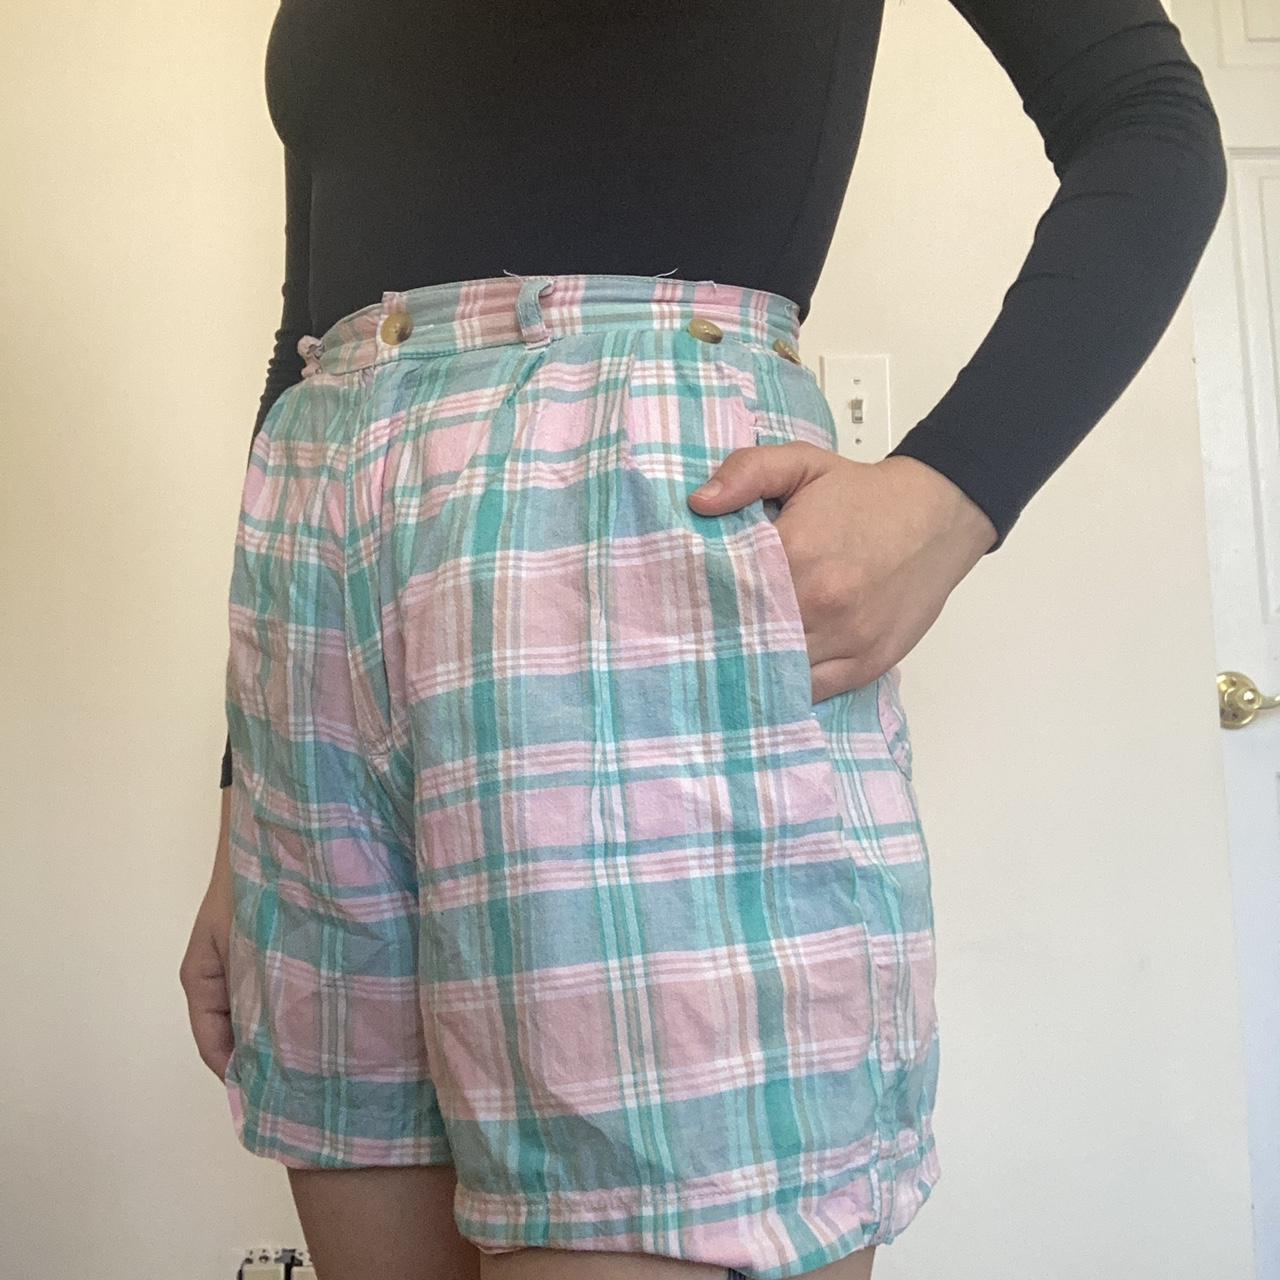 Vintage 80s/90s teal and pink plaid shorts. Super... - Depop